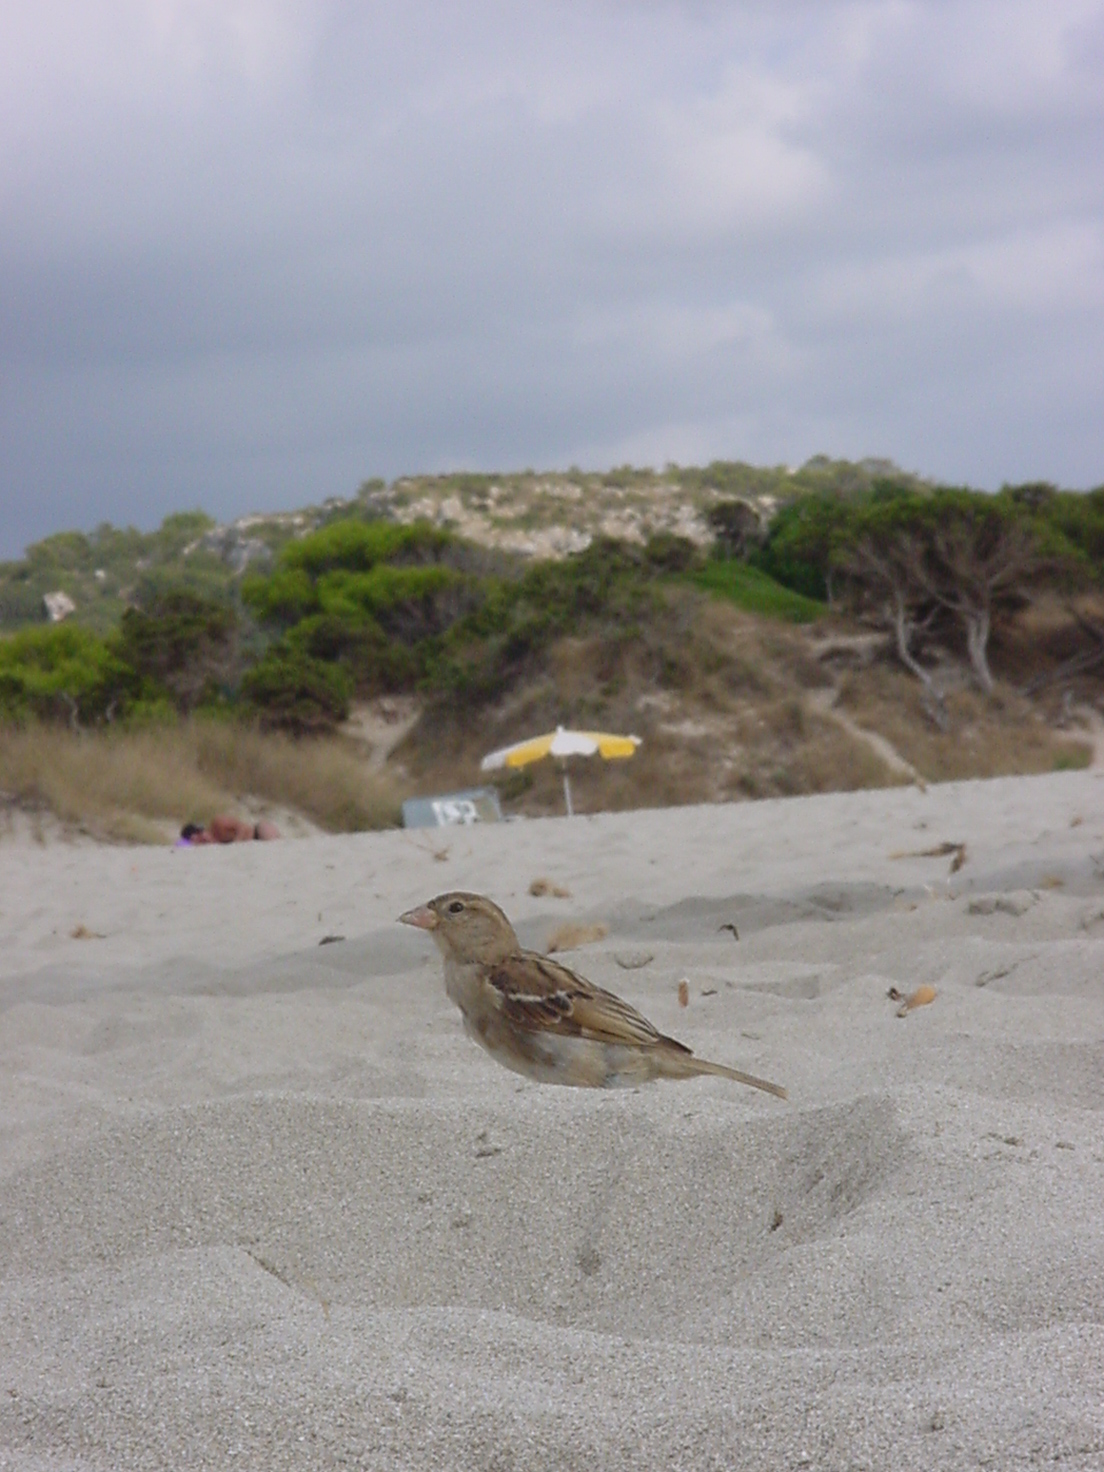 insektokutor bird on beach sand enjoying the weather